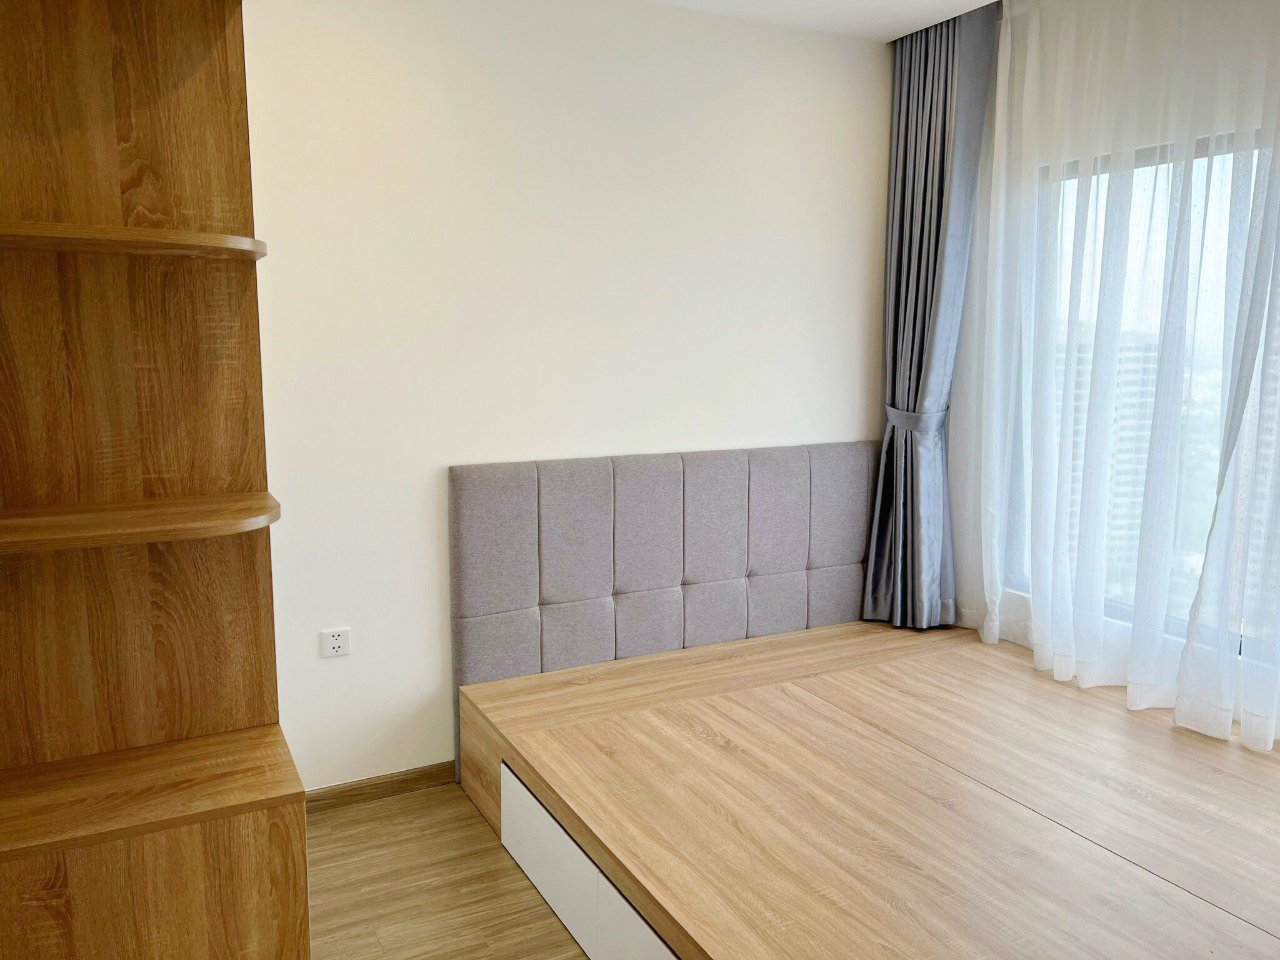 Hoàn thiện nội thất phòng ngủ Căn hộ Tòa S10.03 The Origami Vinhomes phong cách Bắc Âu Scandinavian, phong cách Hiện đại Modern